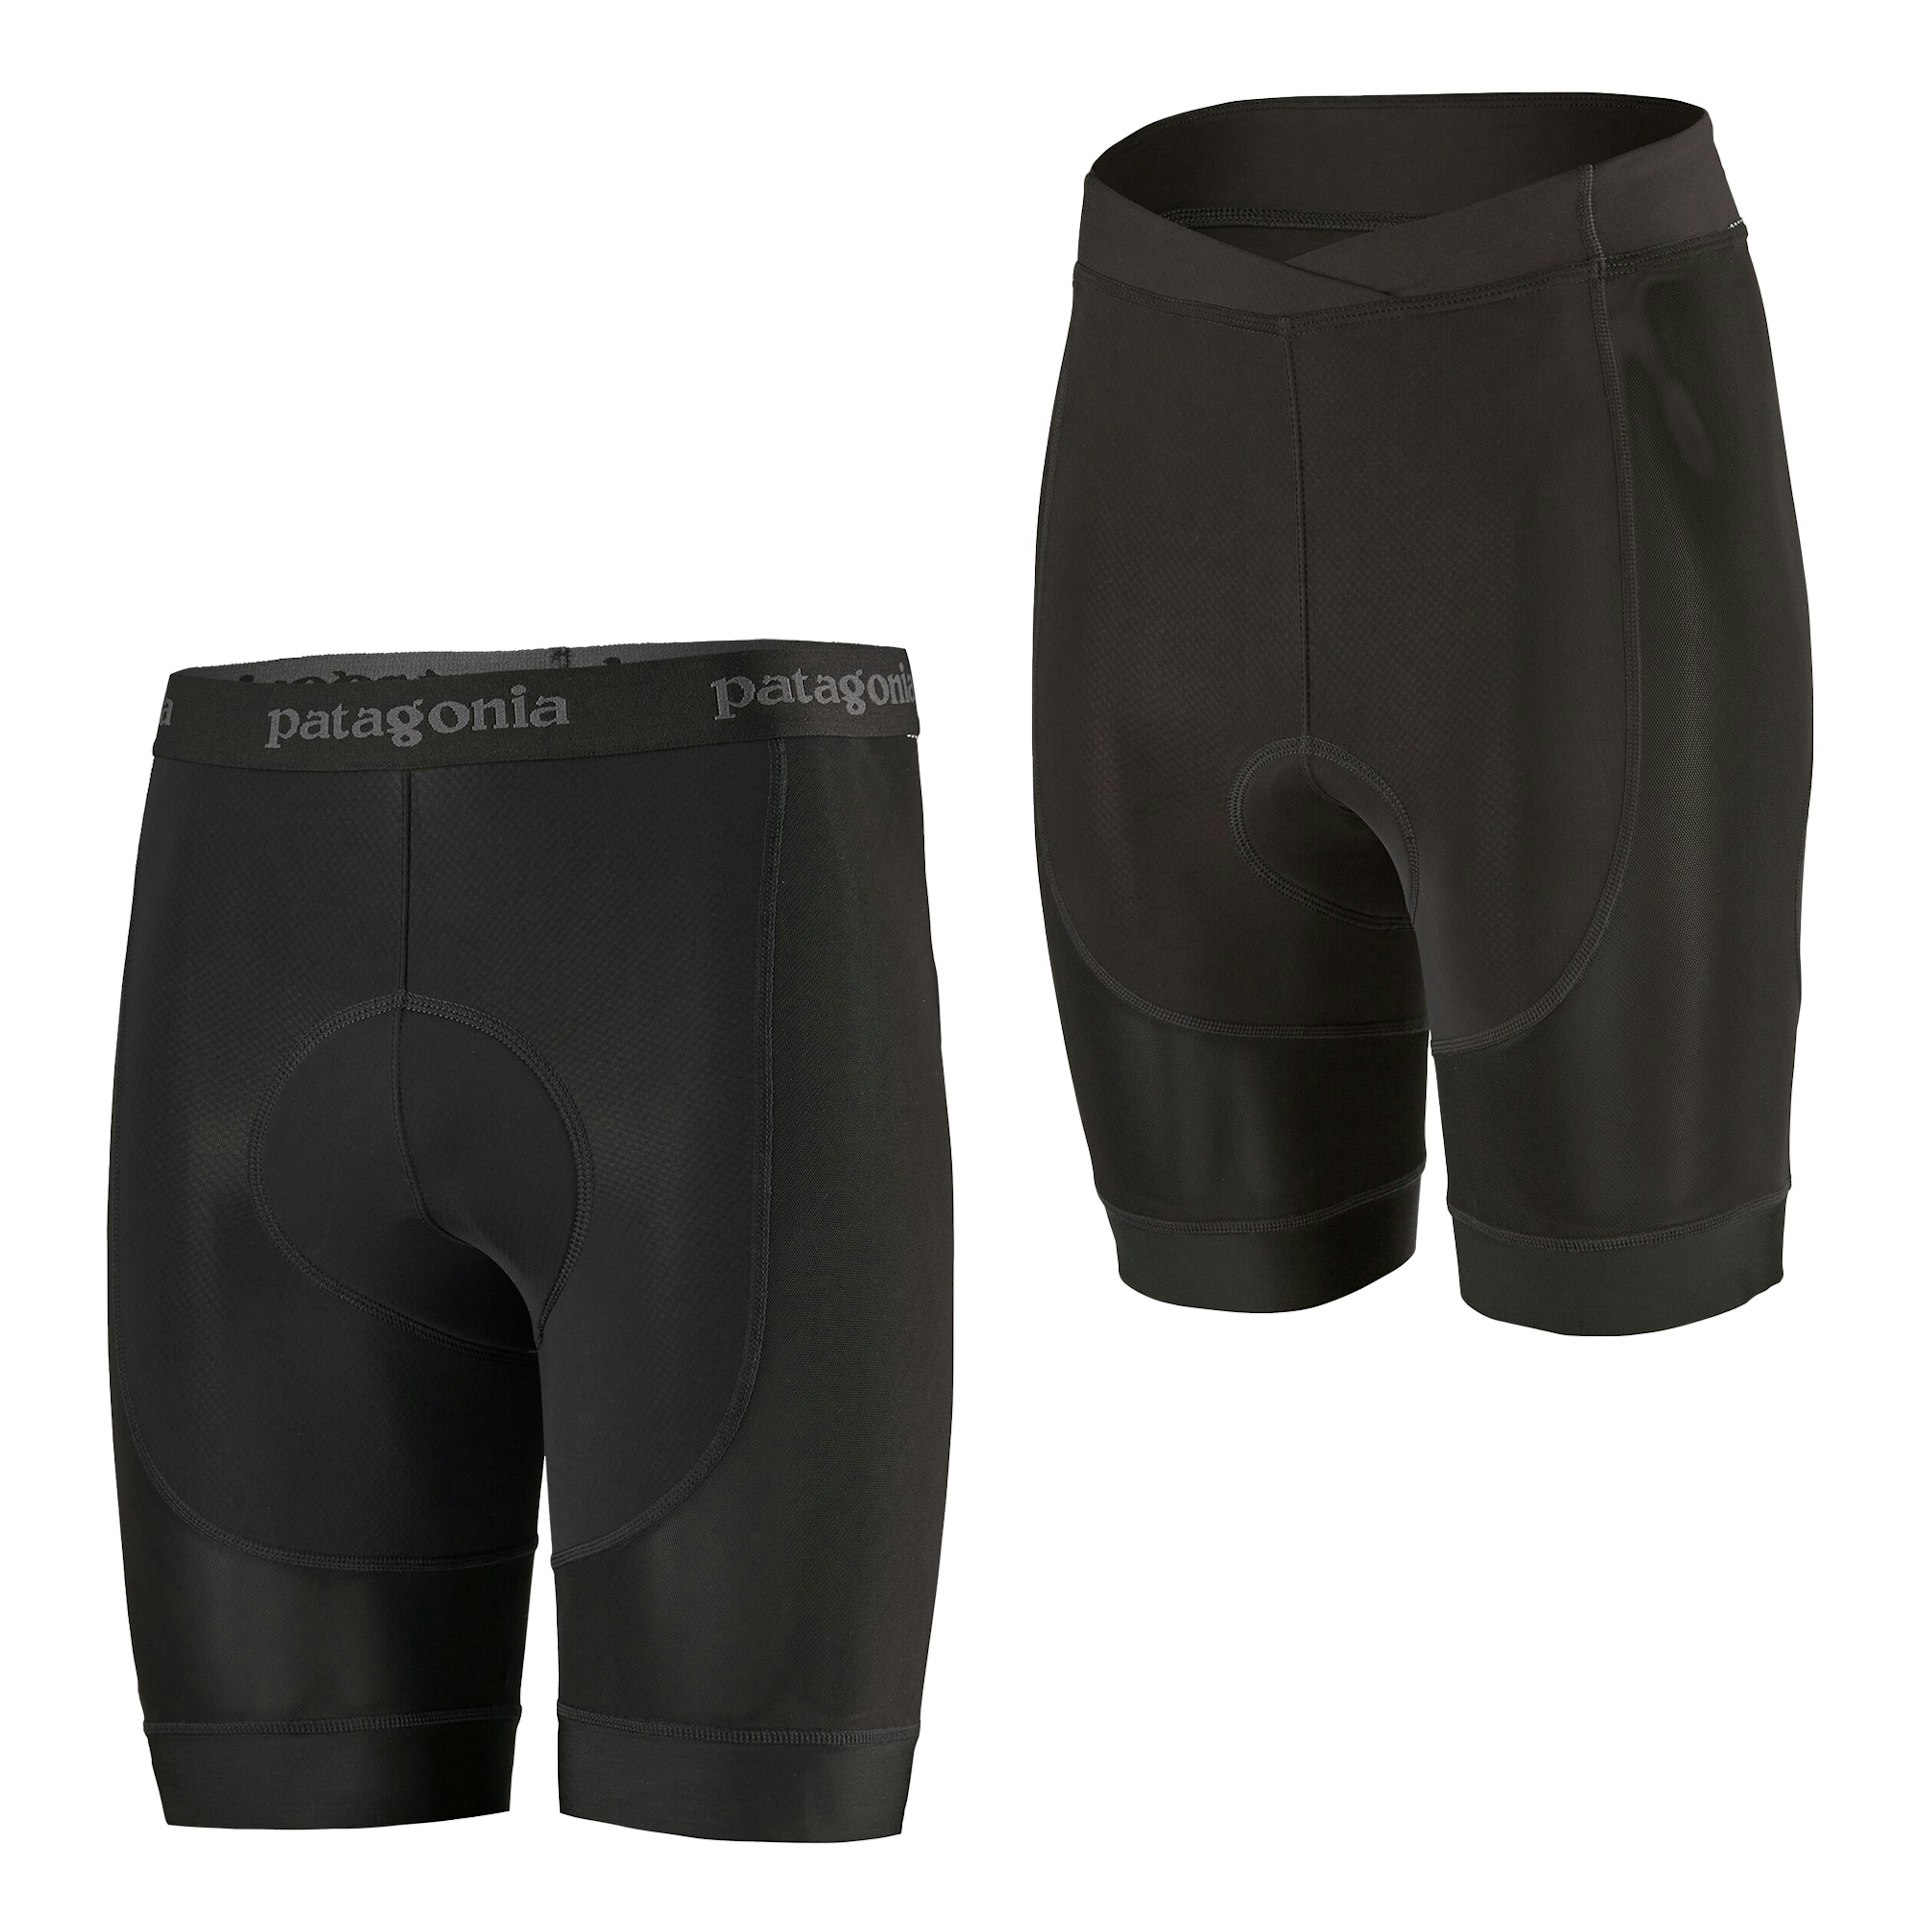 Black men's bike shorts from Patagonia